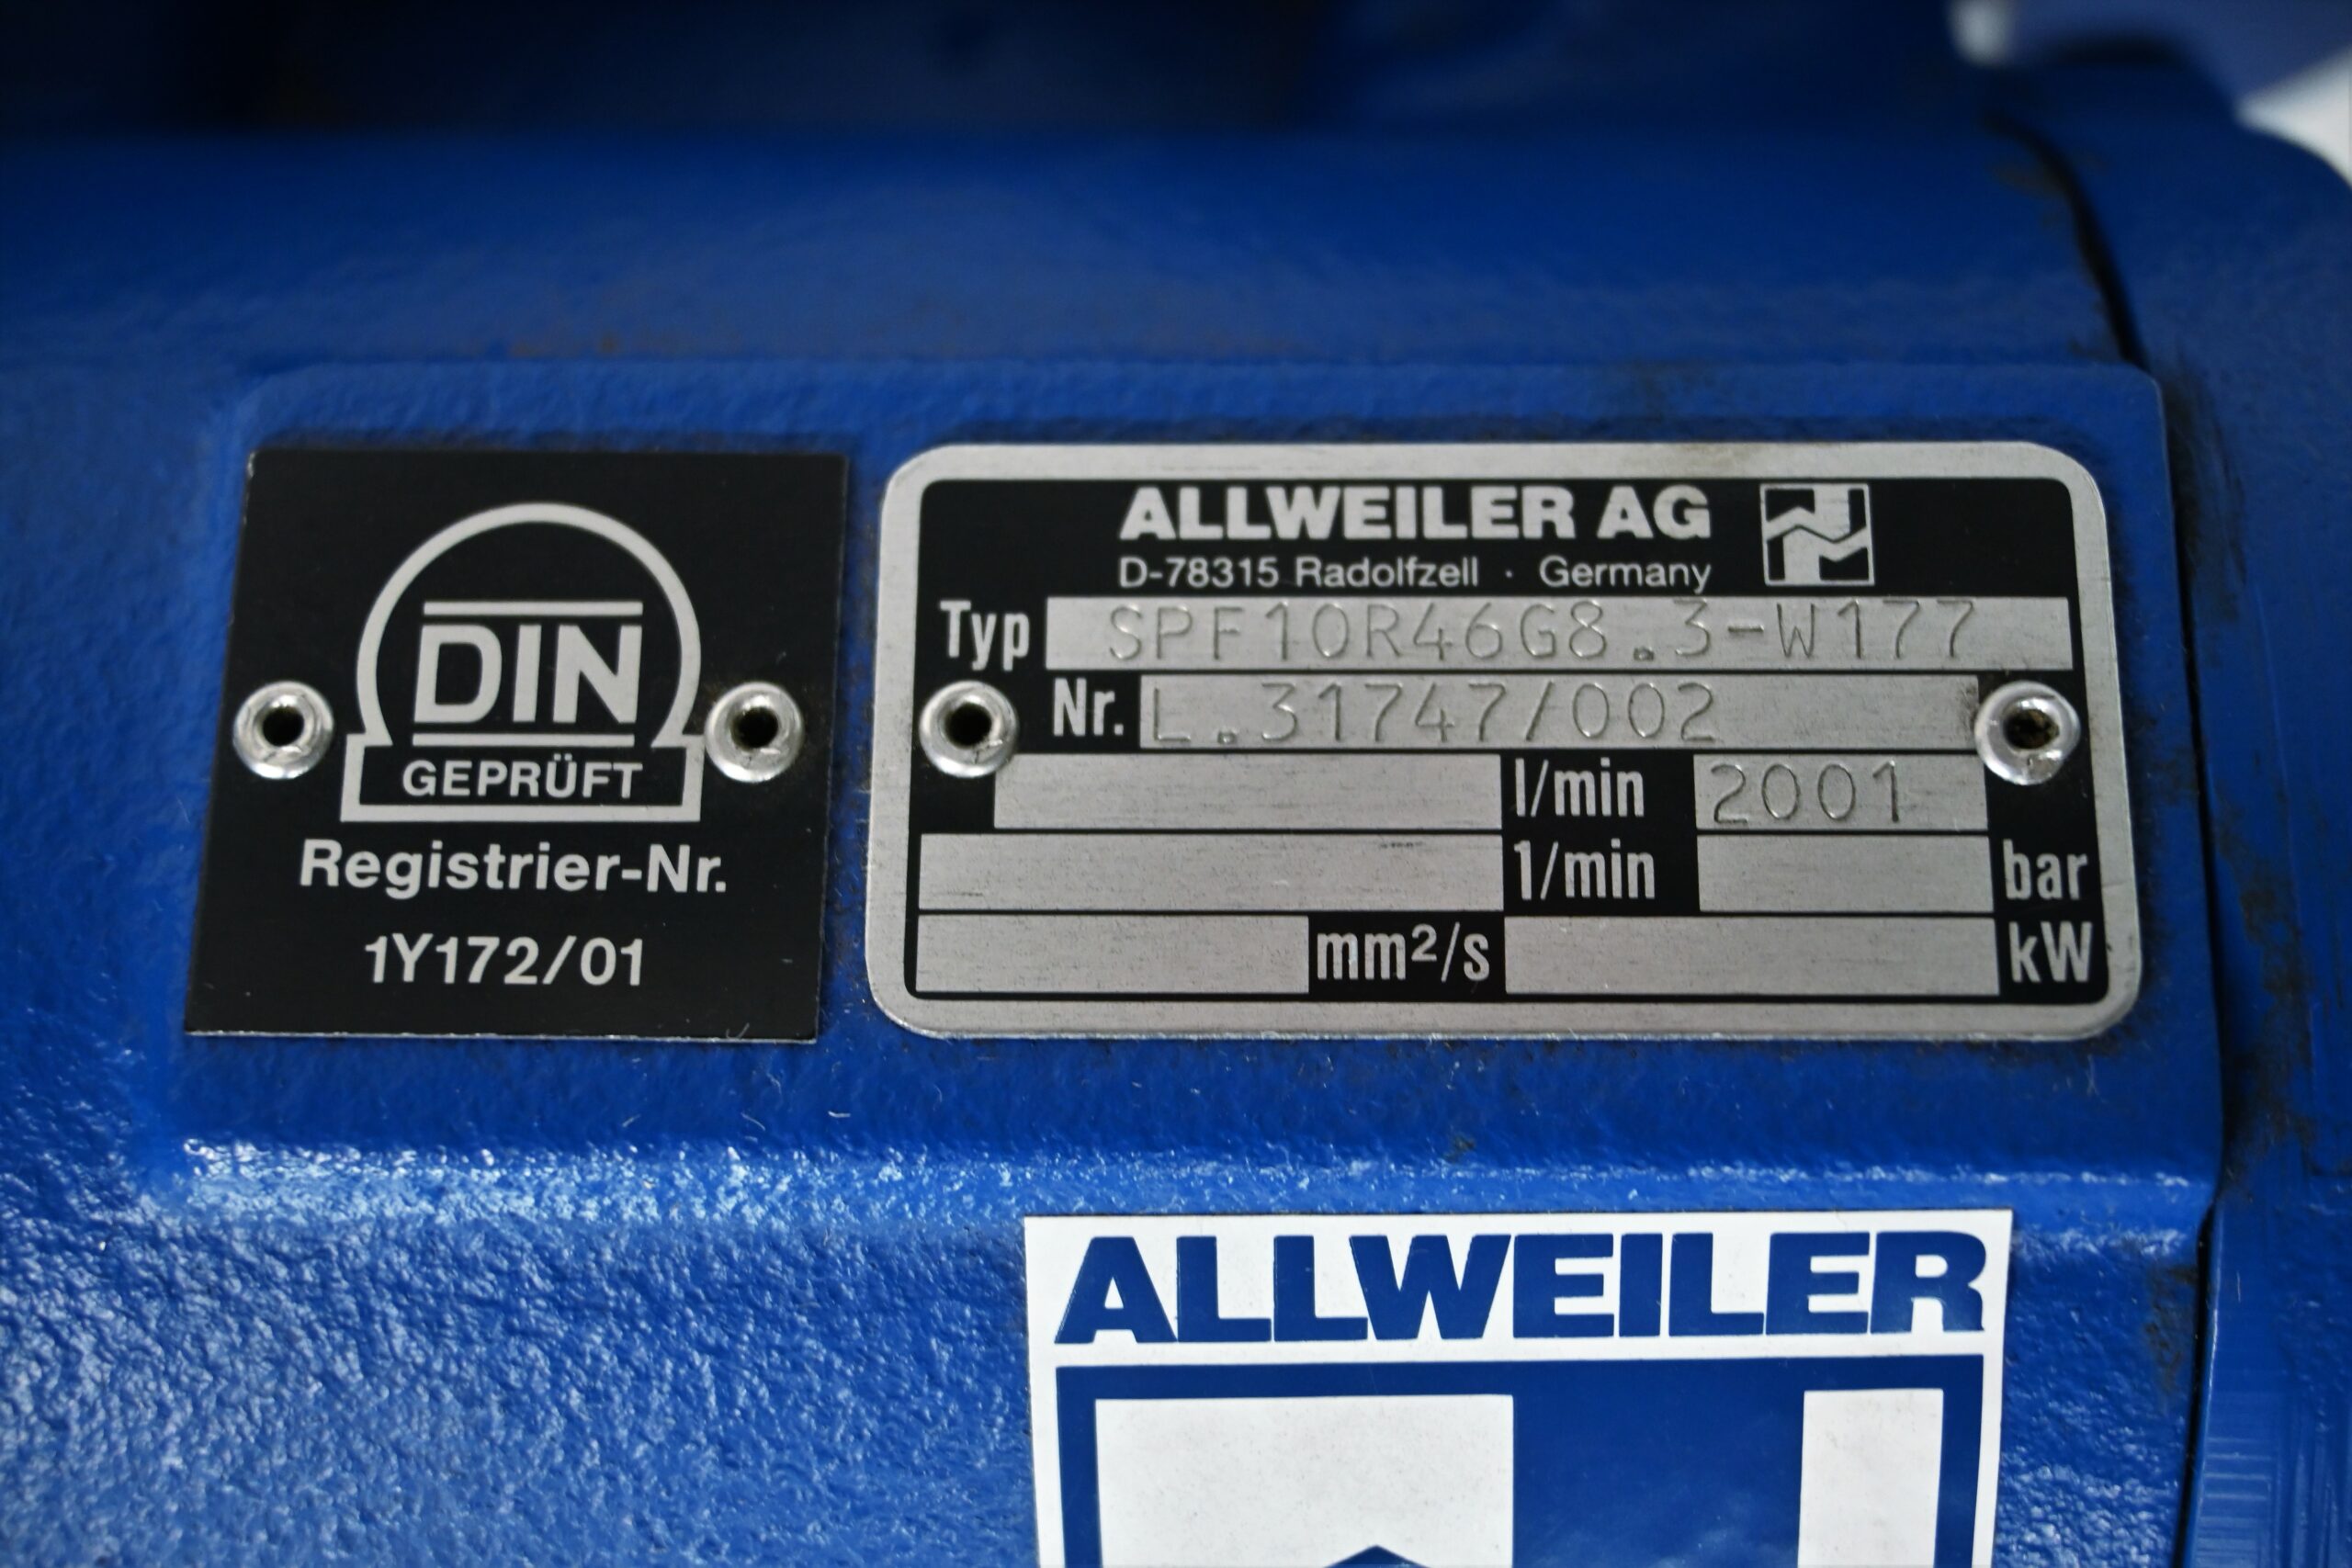 Sininen Allweiler öljypumppu malli SPF 10R46 G8.8-W177 30 BAR